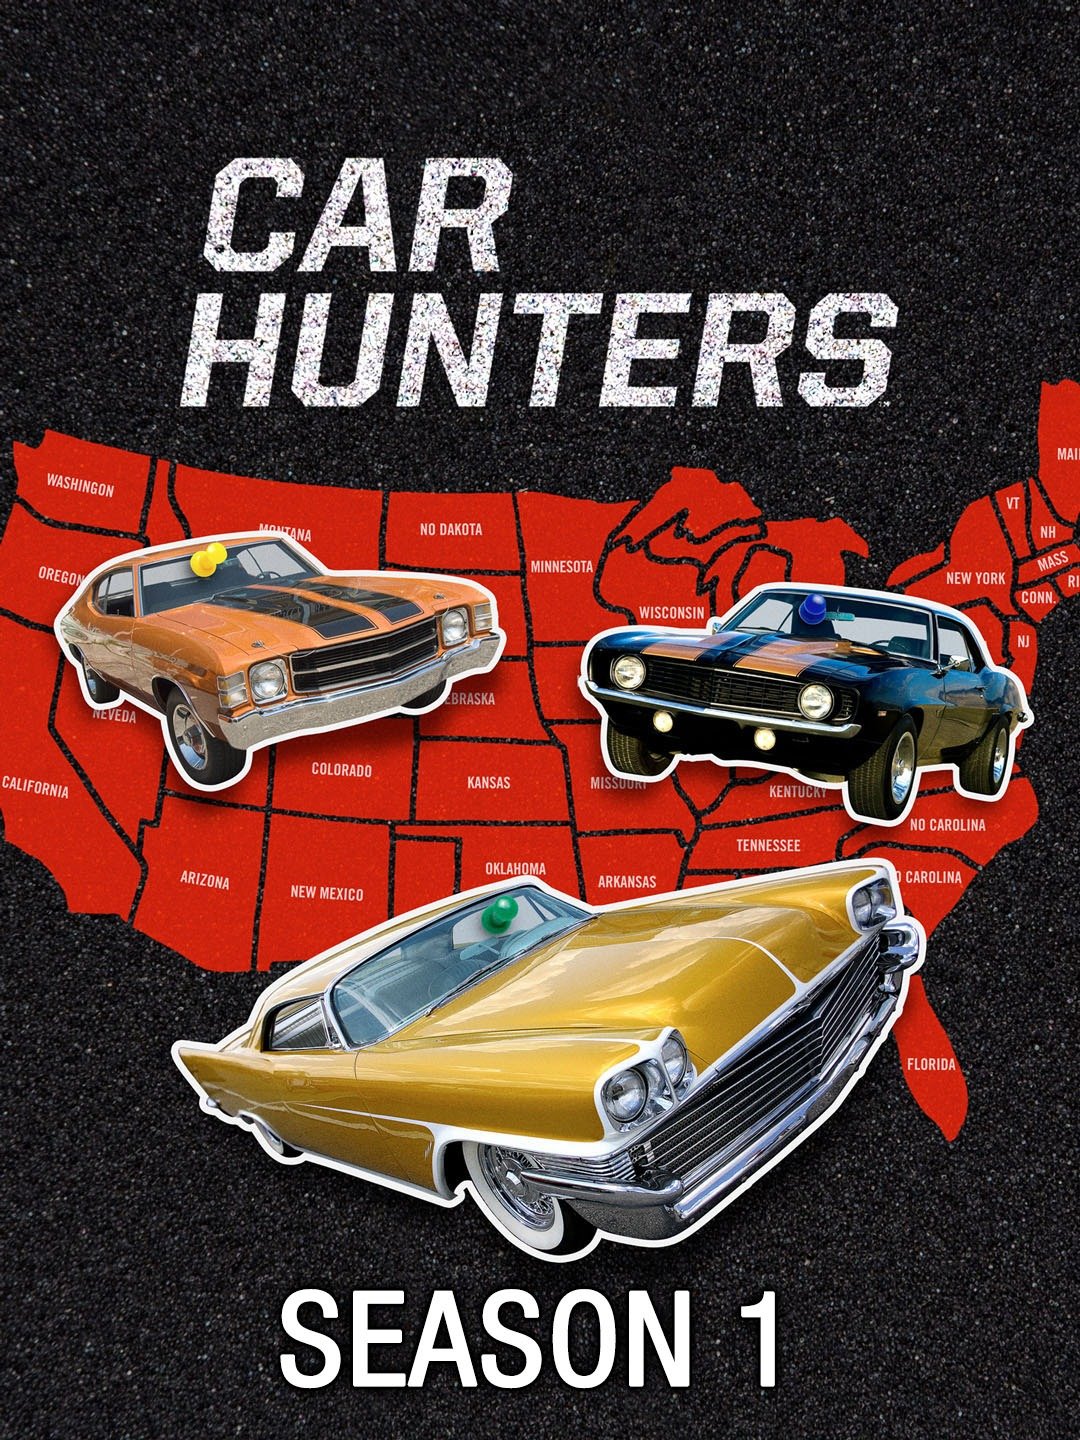 Car Hunters